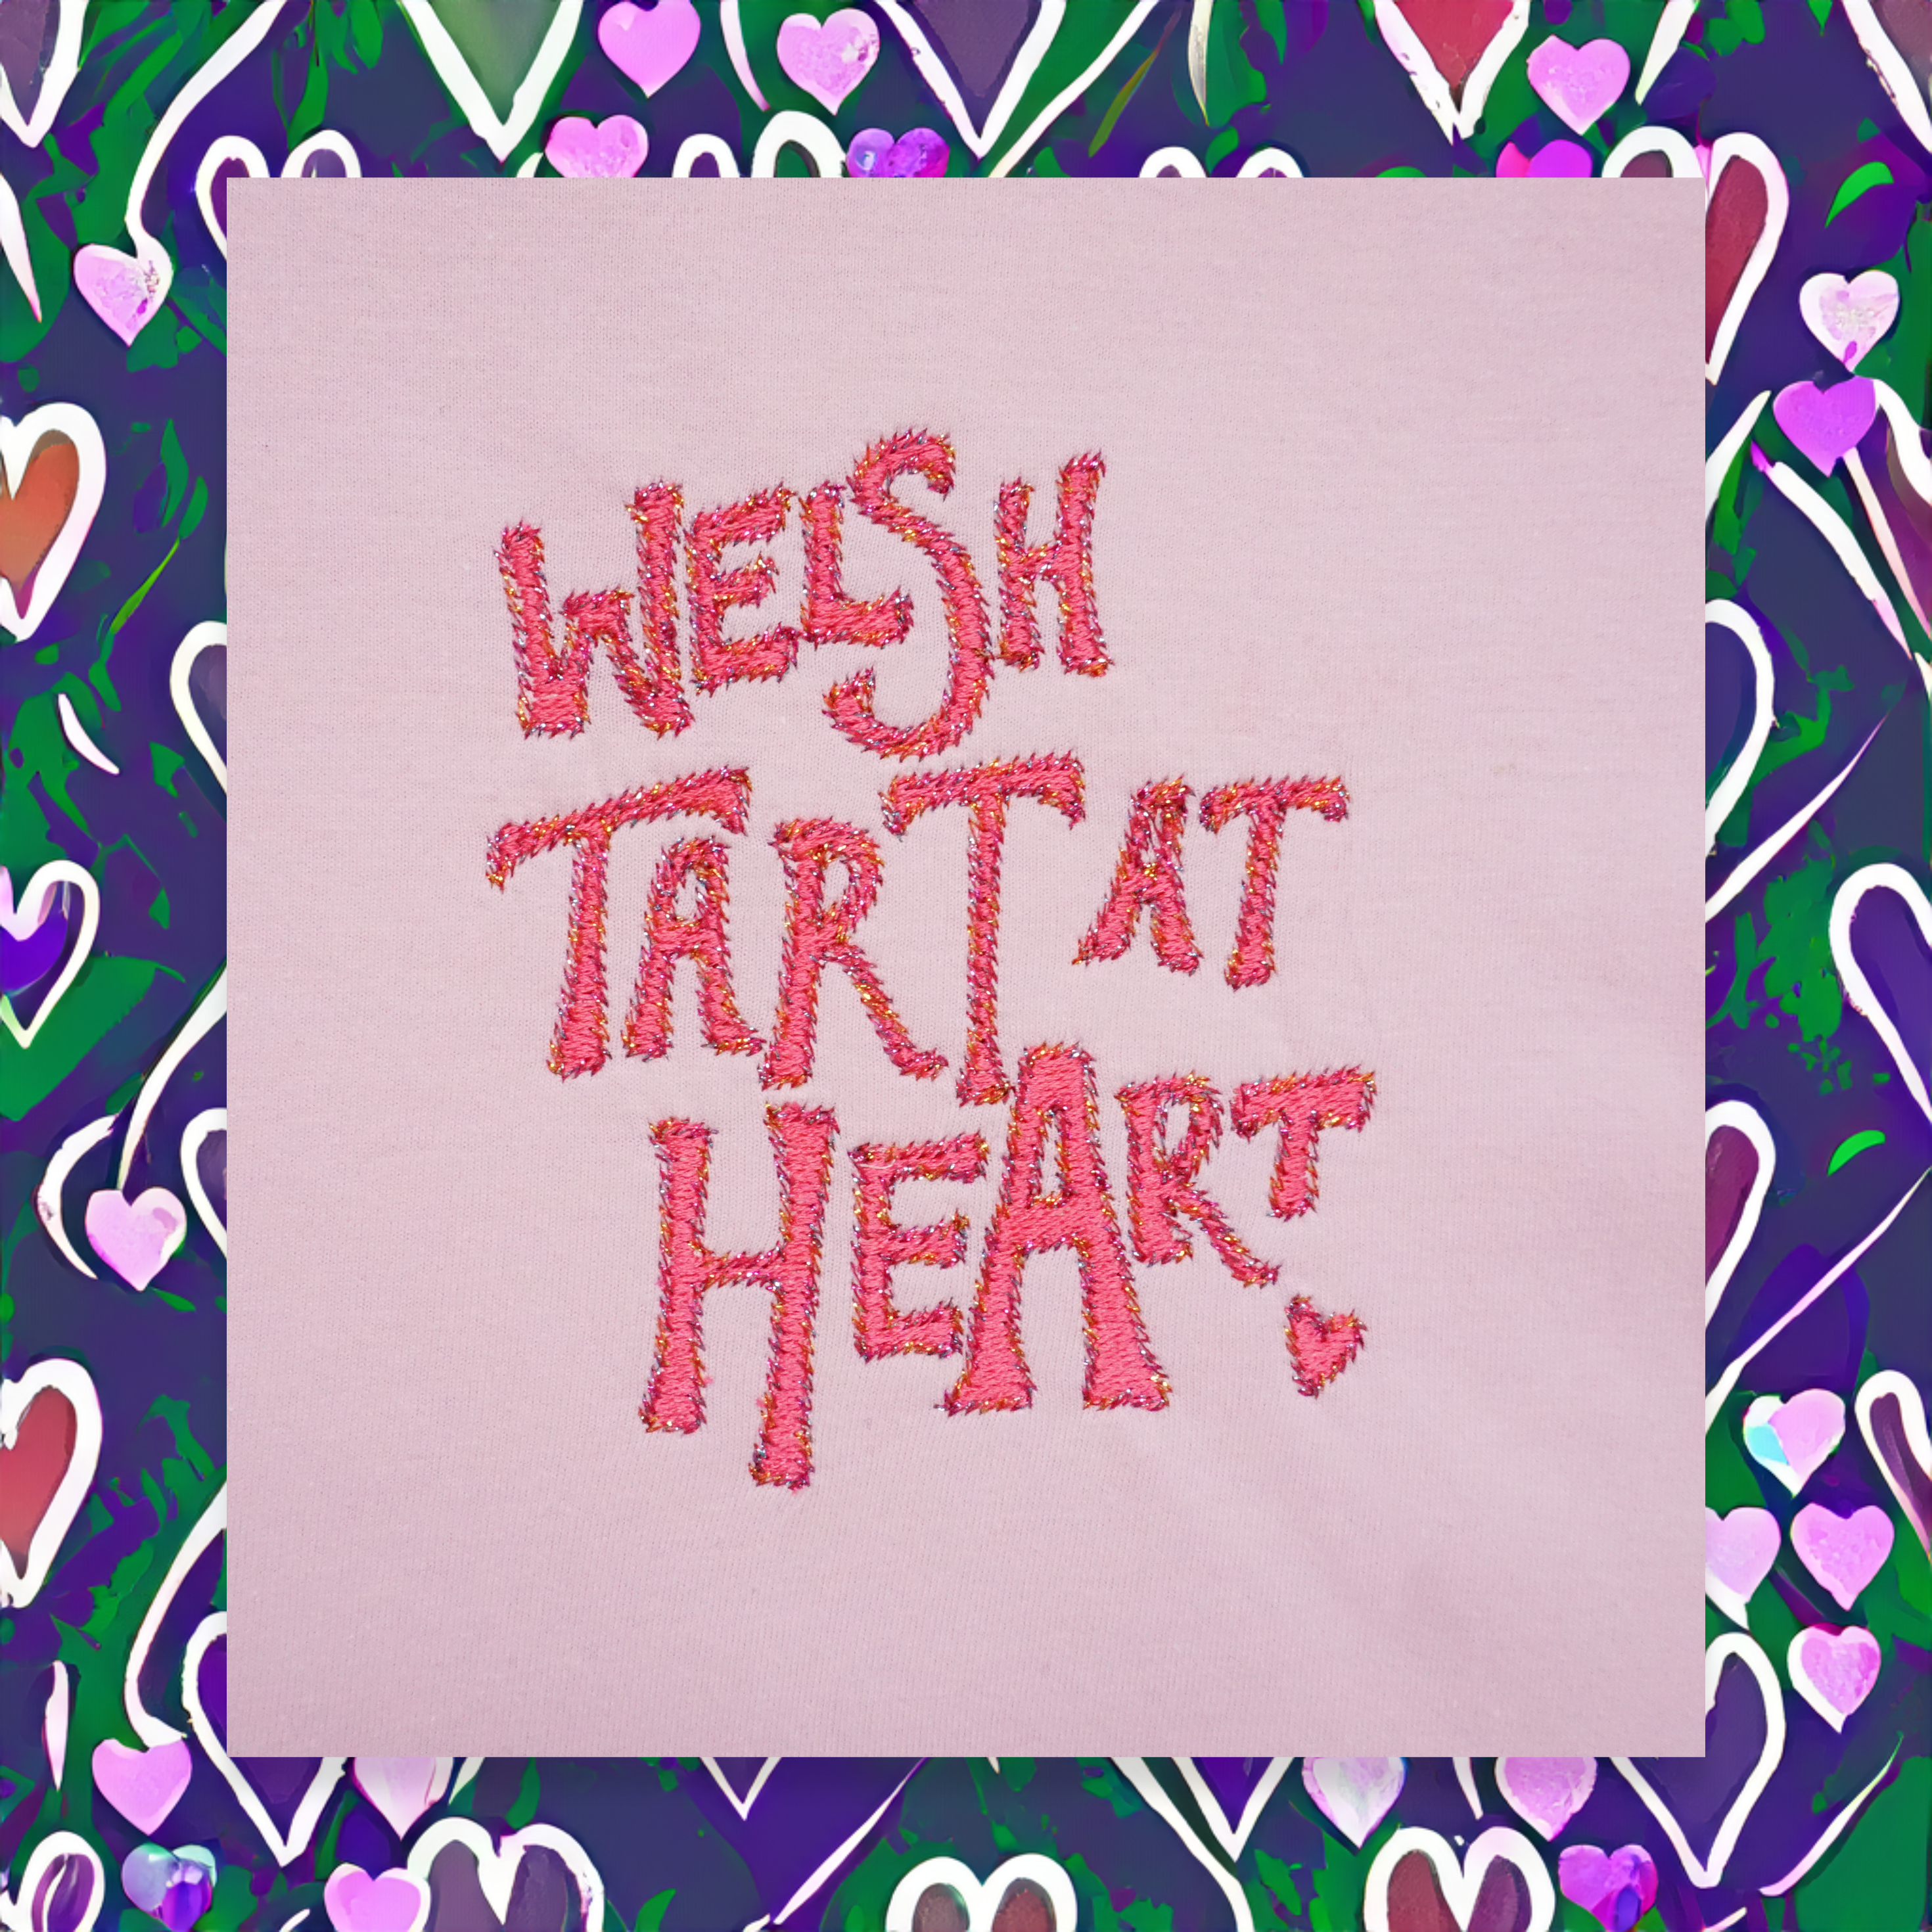 WELSH TART AT HEART T-SHIRT